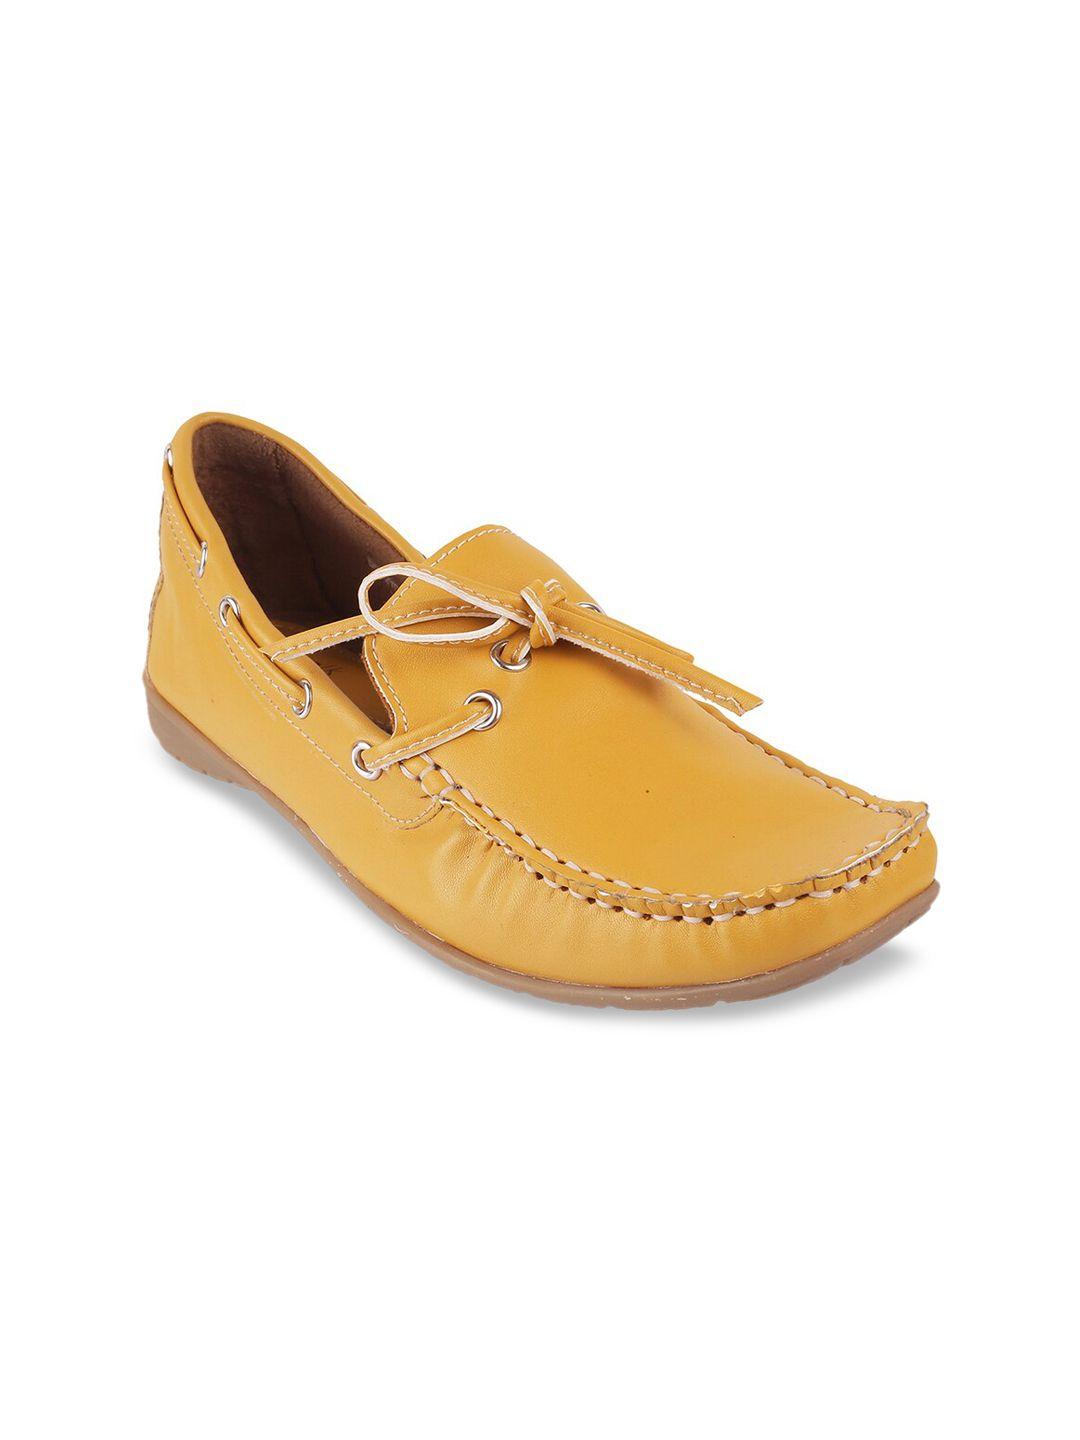 catwalk-women-yellow-boat-shoes